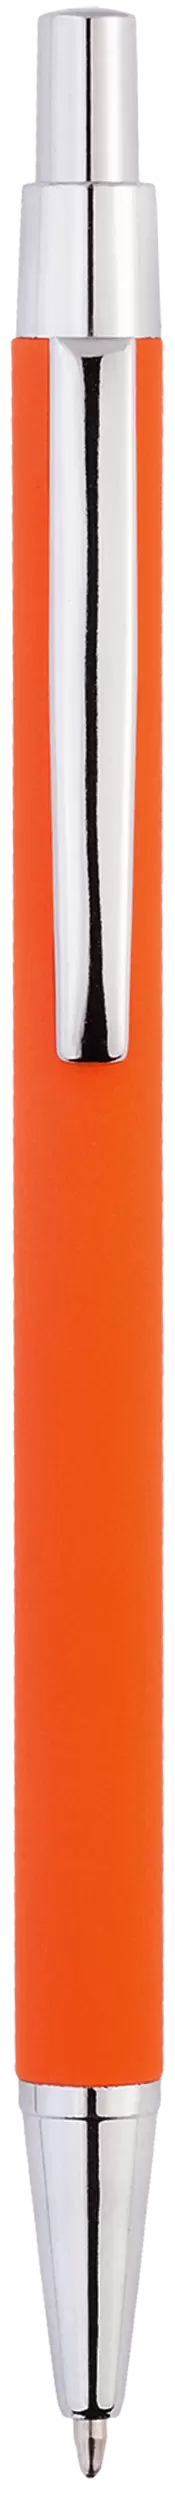 Ручка MOTIVE SOFT Оранжевая 1100-05